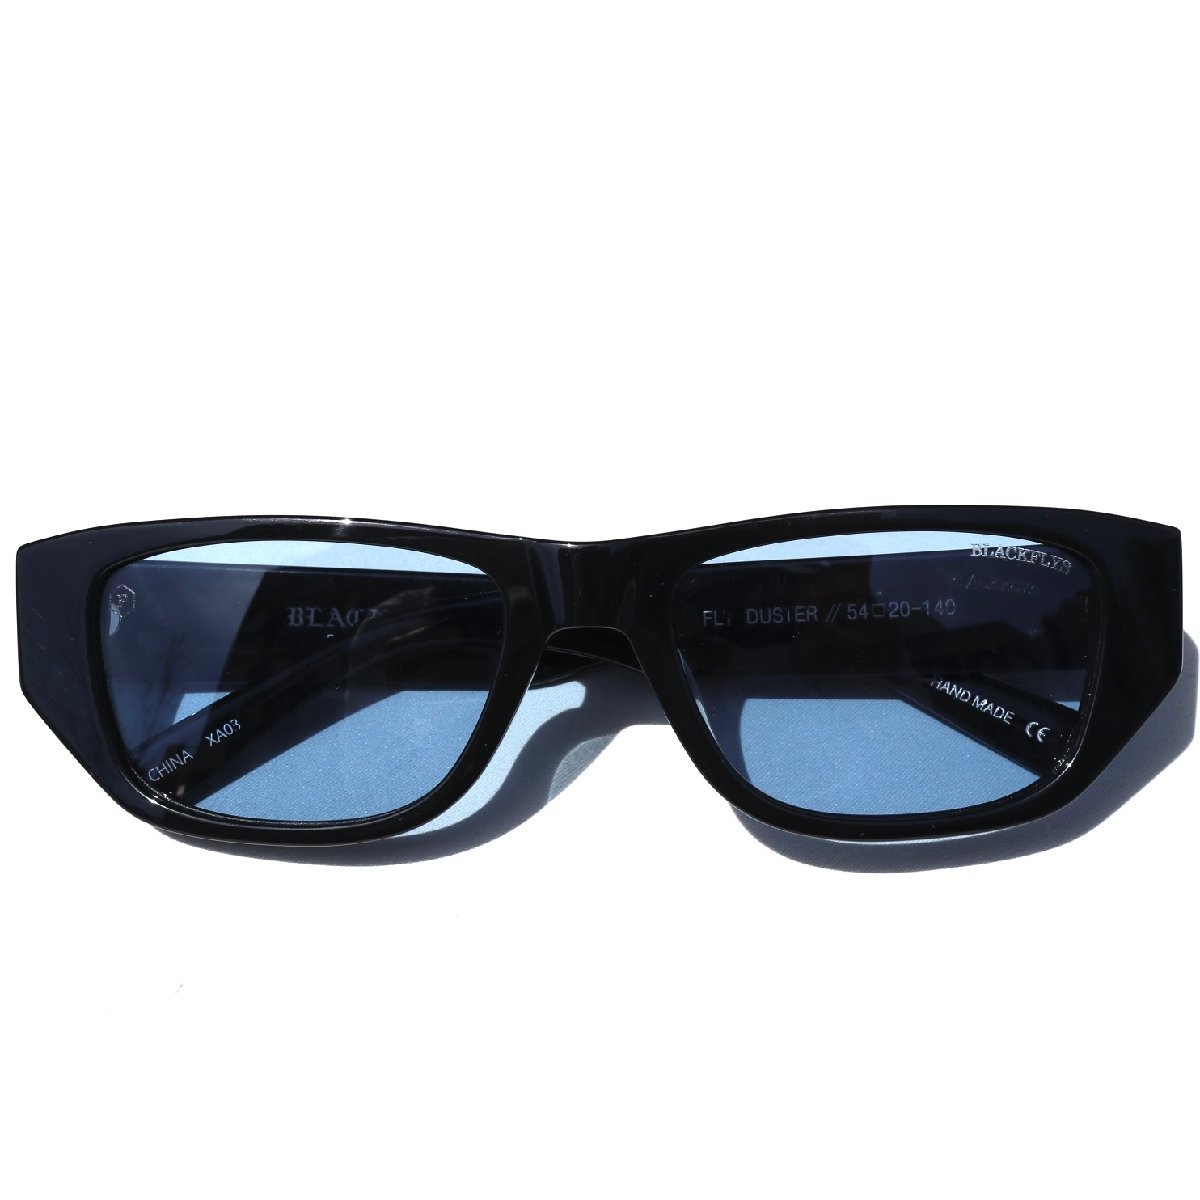  polarized light light blue lens Black Fly FLY DUSTER sunglasses BLACK/Lt.BLUE(POL) BlackFlys